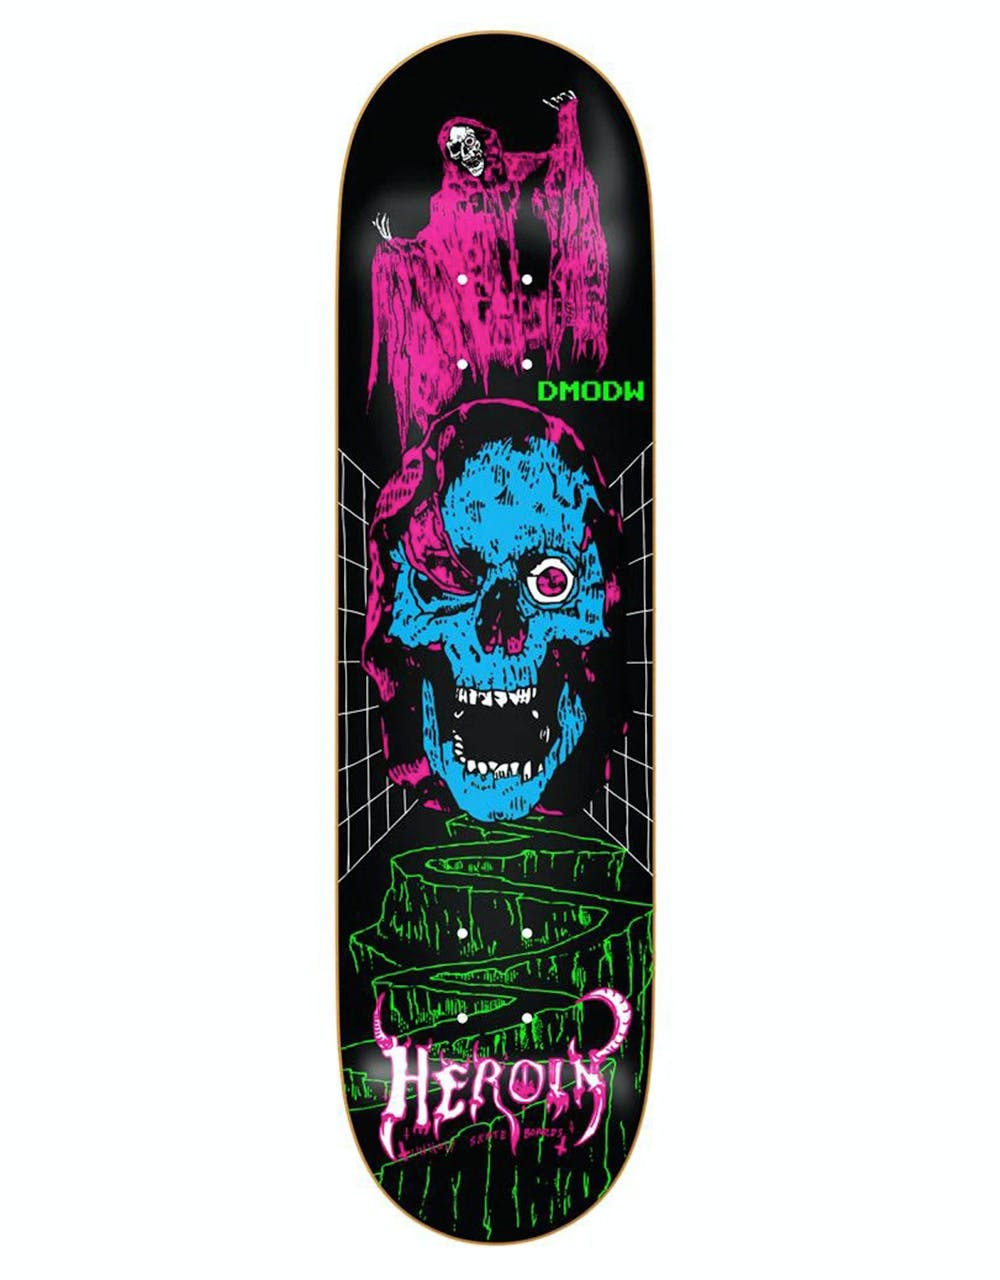 Heroin Deer Man of Dark Woods Videodrome Skateboard Deck - 9"